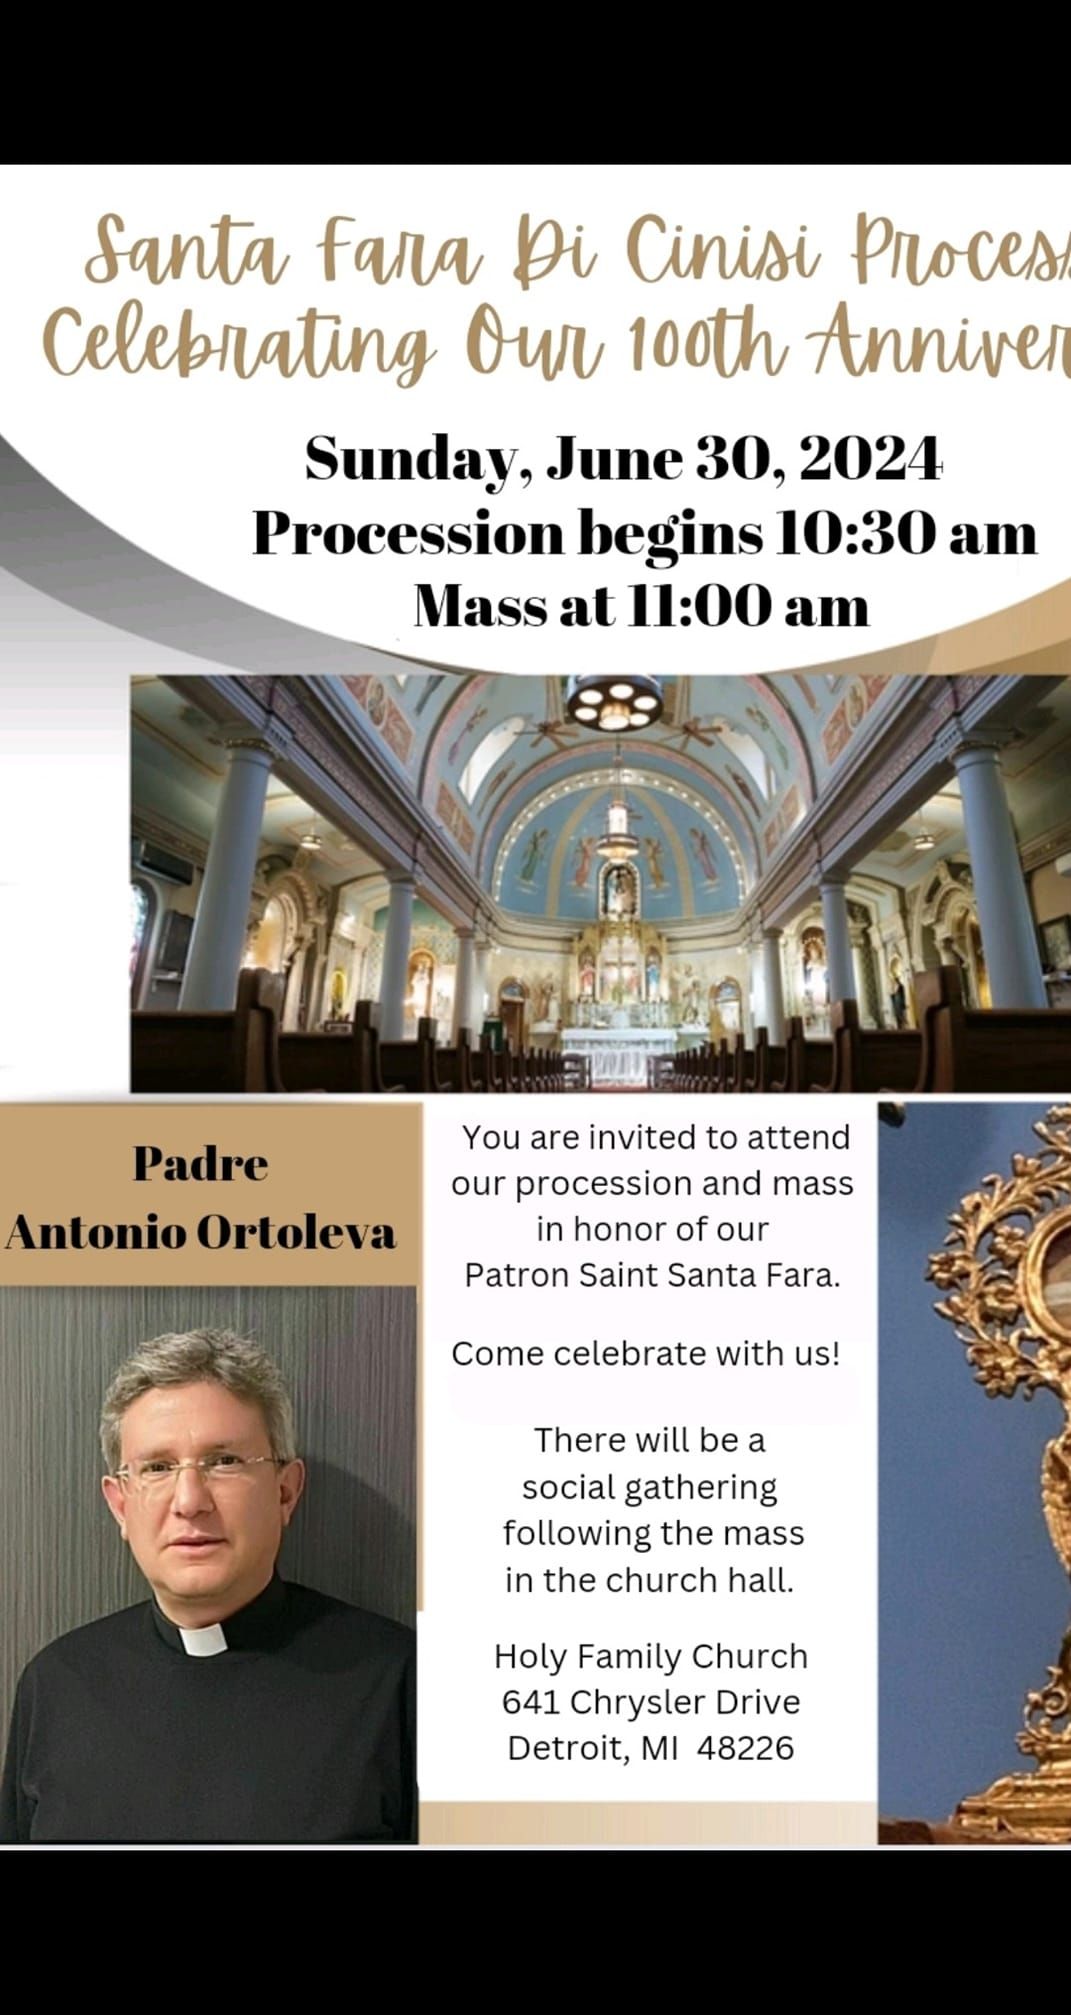 Santa Fara Procession Celebrating Our 100th Anniversary